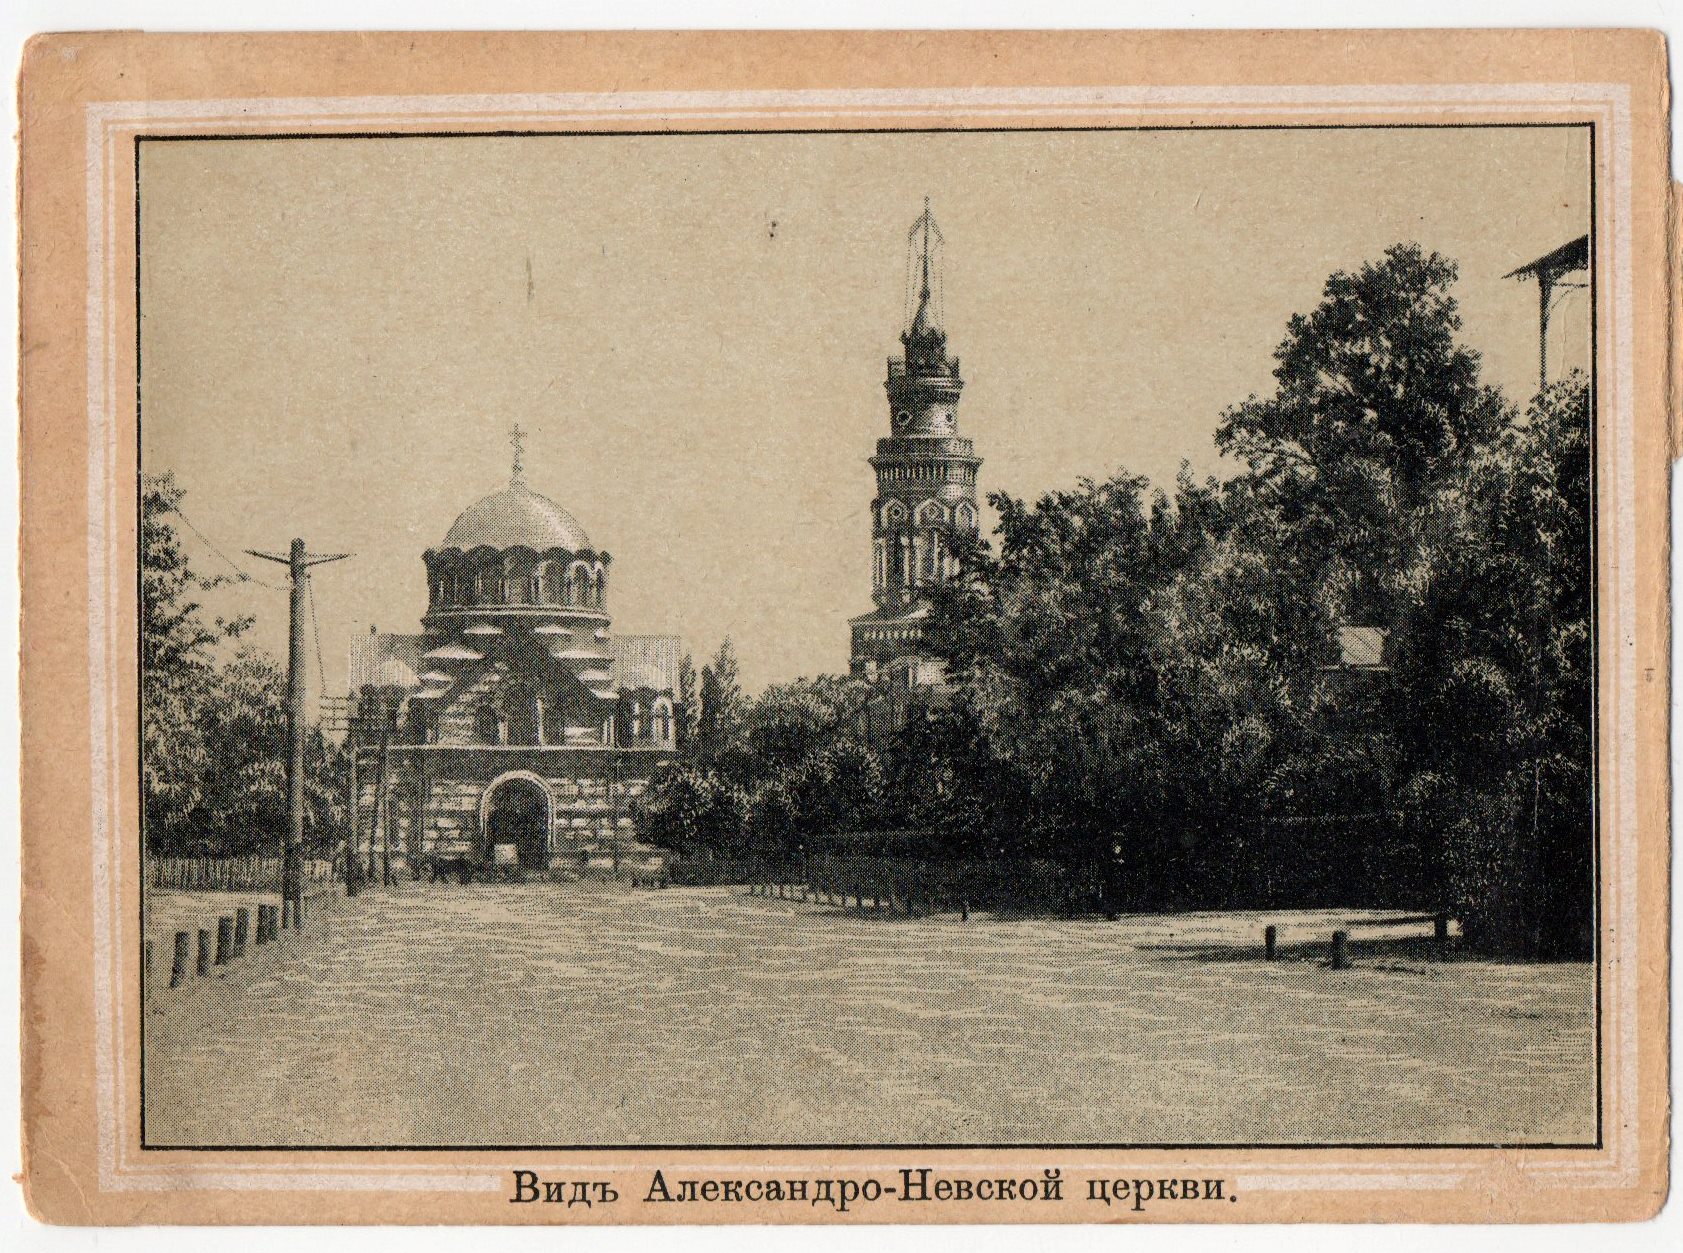 Поштова листівка з альбому "Виды Кіева". "Видъ Александро-Невской церкви"